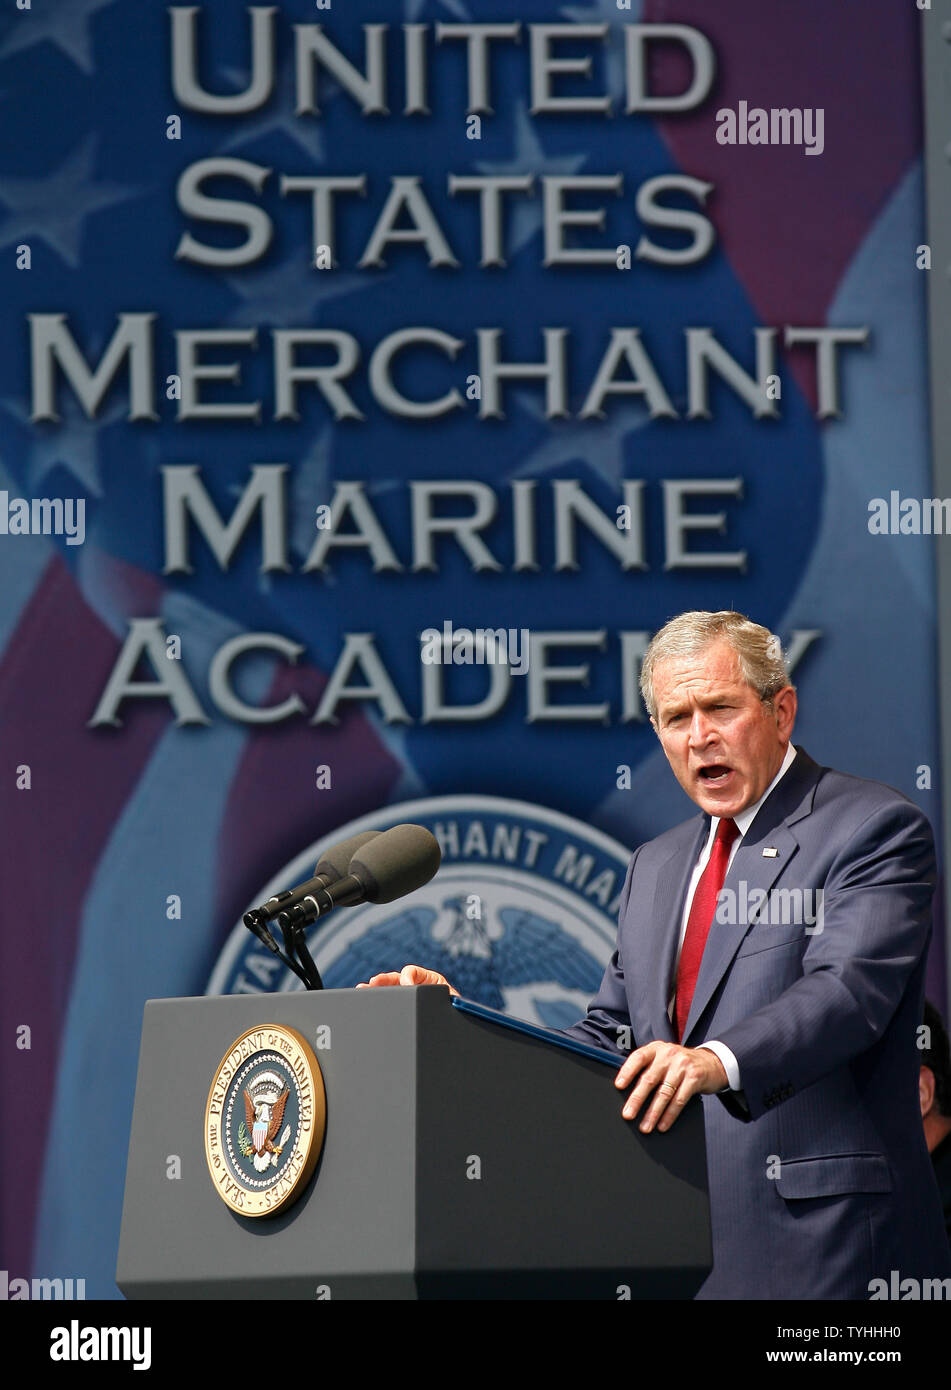 El presidente George W. Bush habla durante el día de graduación en la Academia de la Marina Mercante de los Estados Unidos en Kings Point, Nueva York, el 19 de junio de 2006. (UPI Photo/John Angelillo) Foto de stock